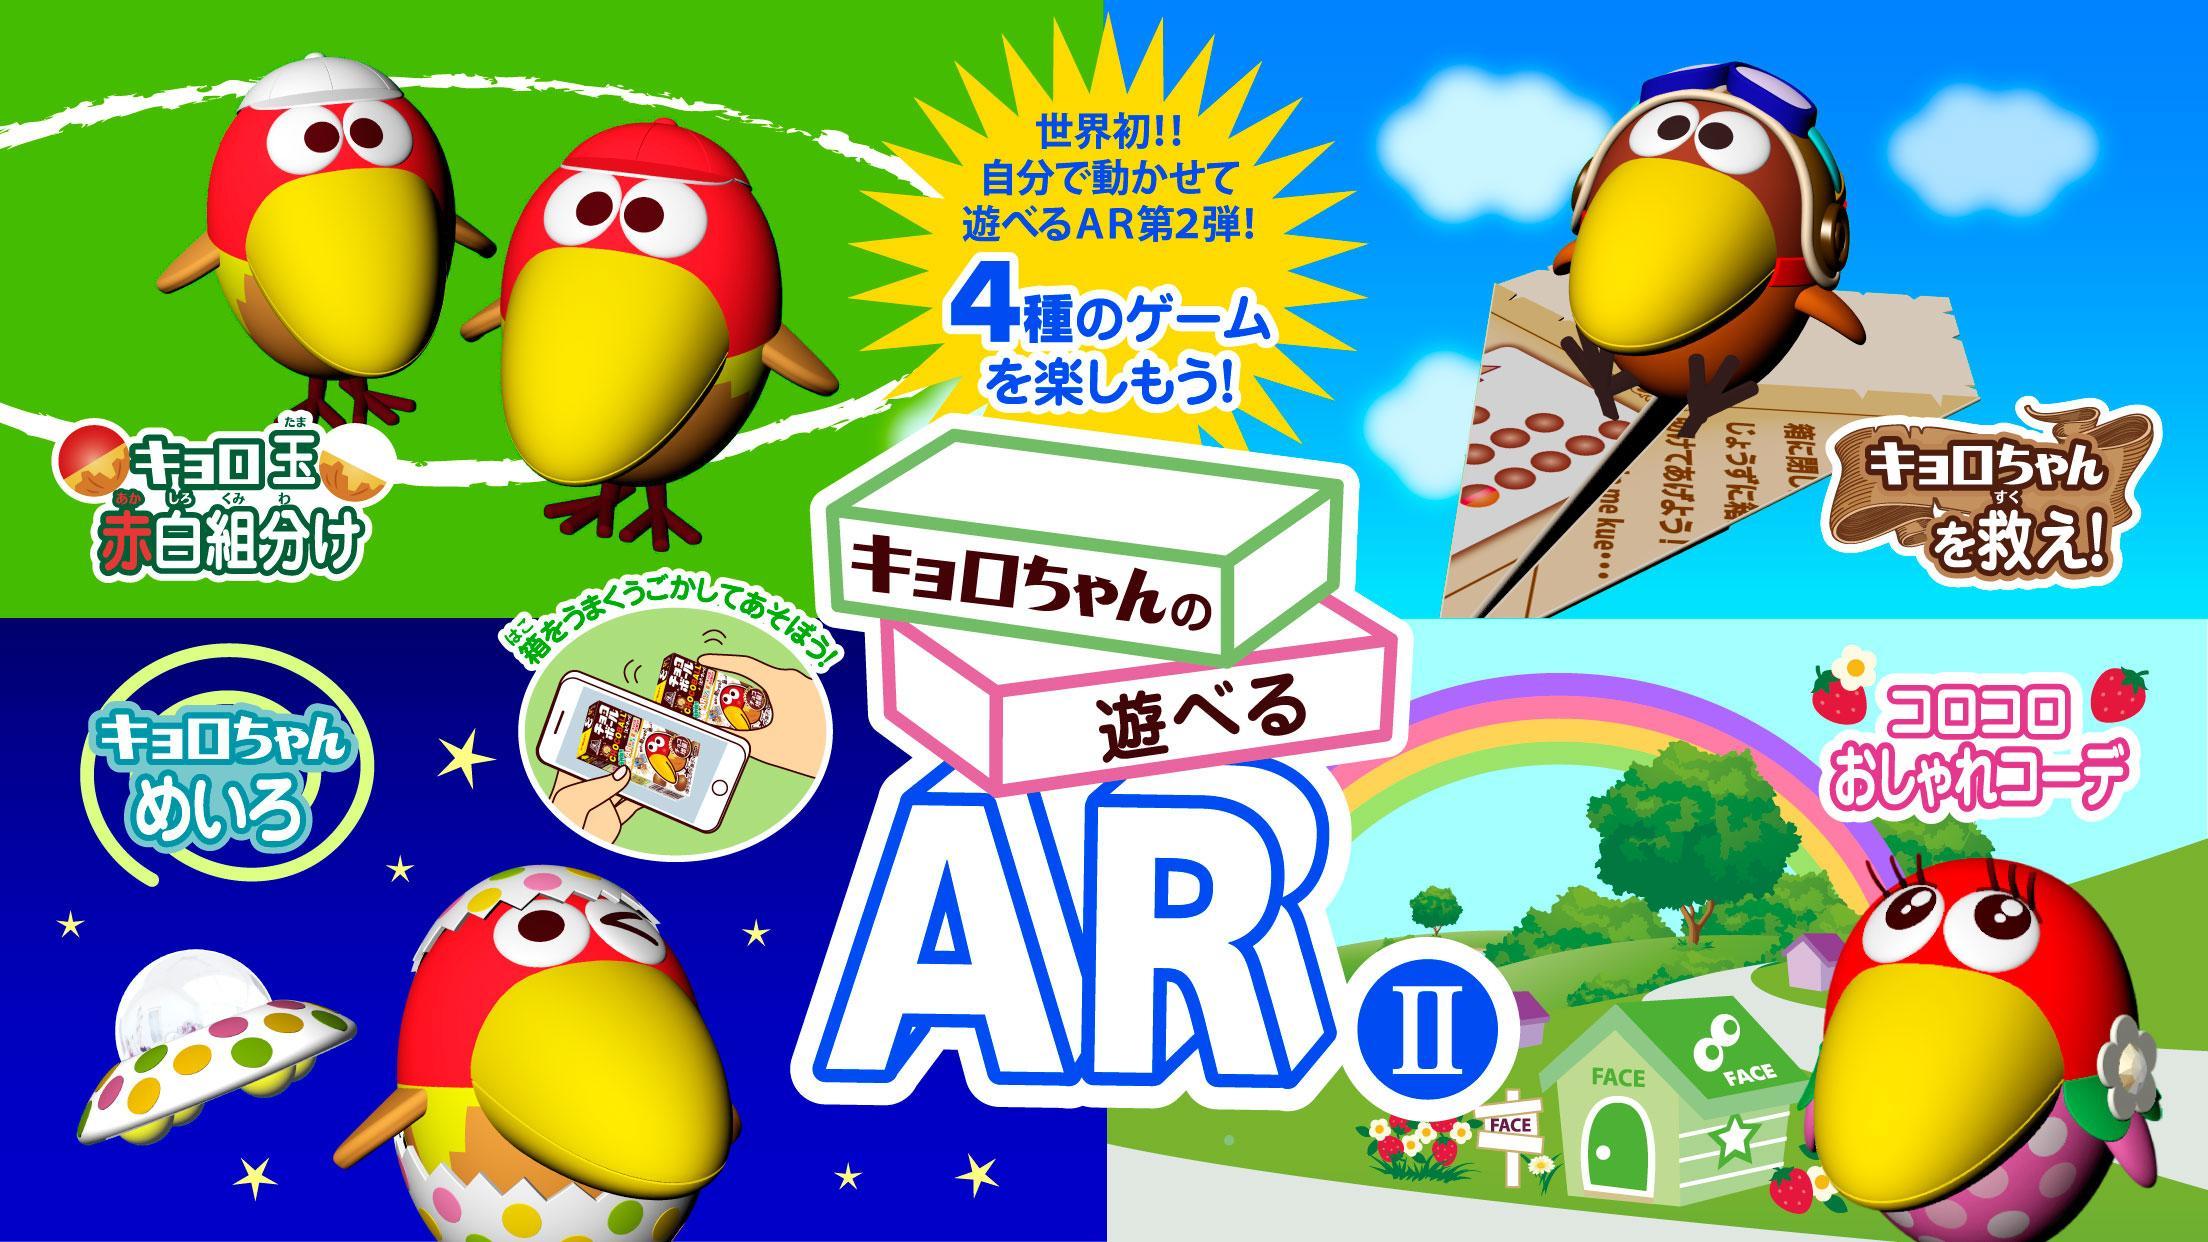 Screenshot 1 of AR II jugable de Kyoro-chan Juego gratuito para jugar con una caja de bolas de chocolate 1.2